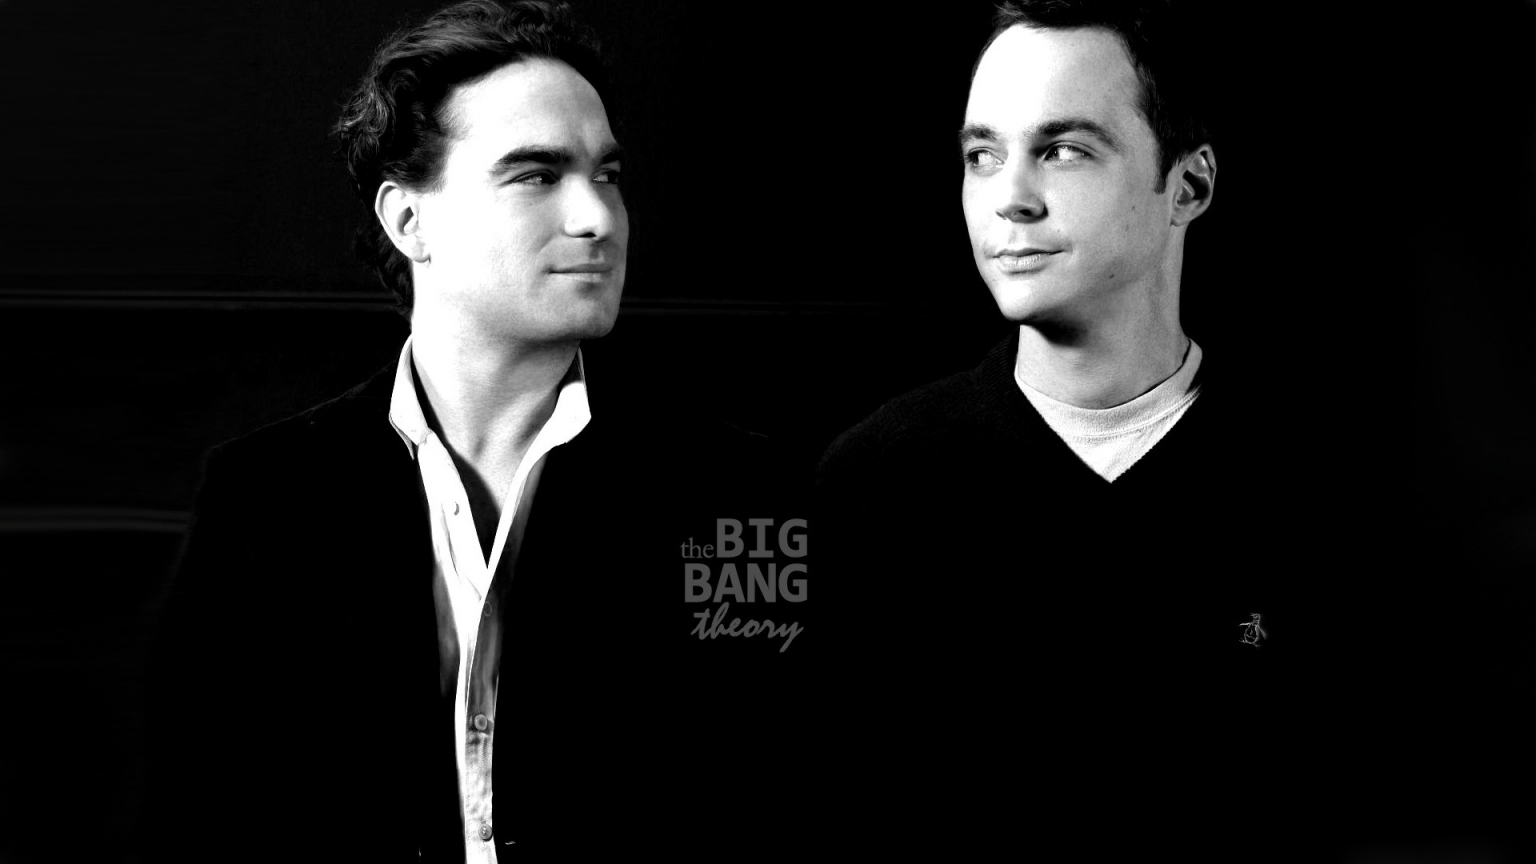 The Big Bang Theory Leonard and Sheldon for 1536 x 864 HDTV resolution